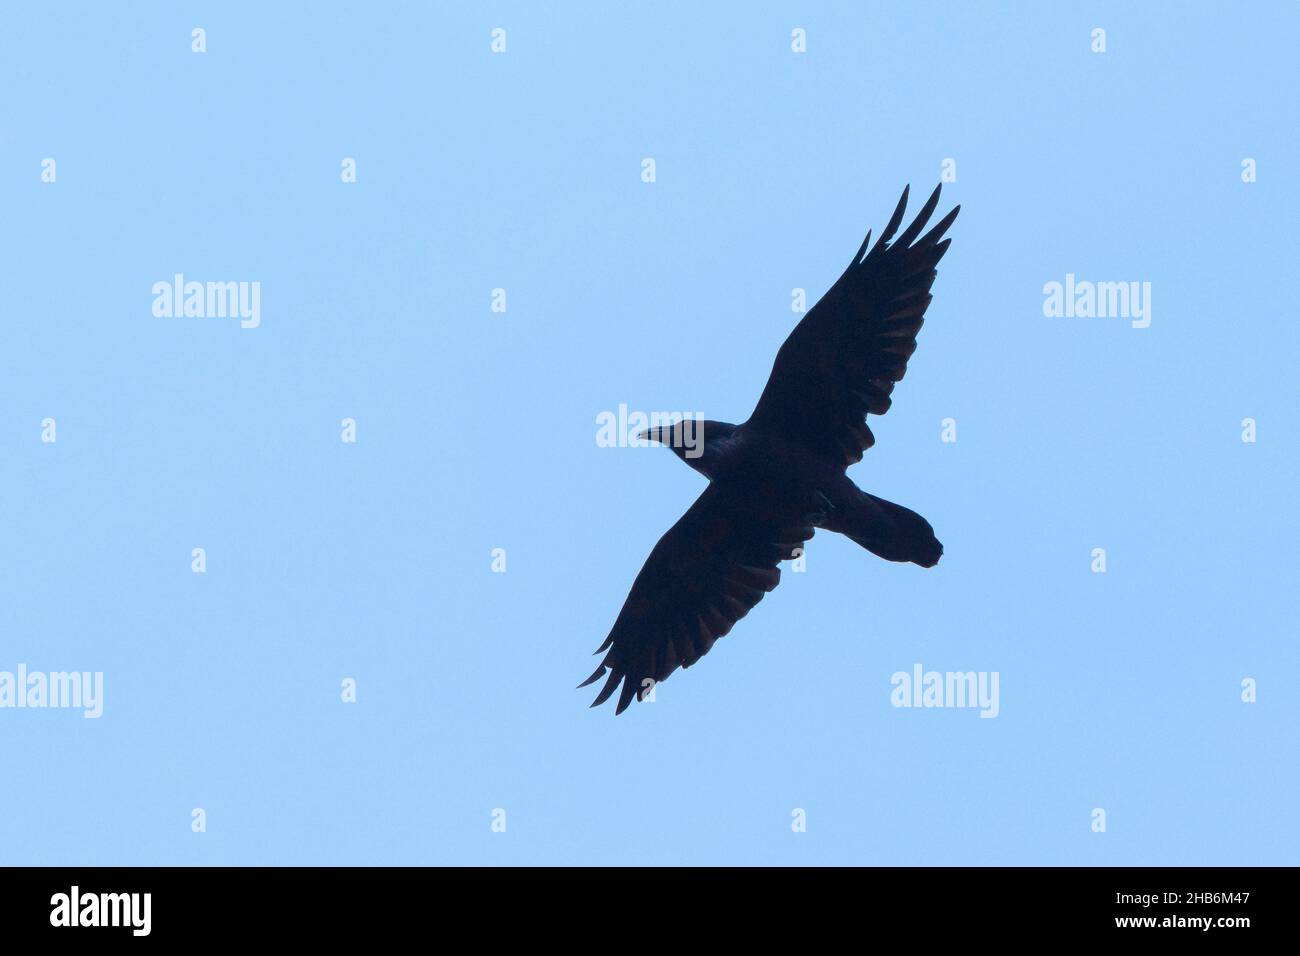 Cuervo común (Corvus corax), en vuelo frente al cielo azul, Alemania Foto de stock